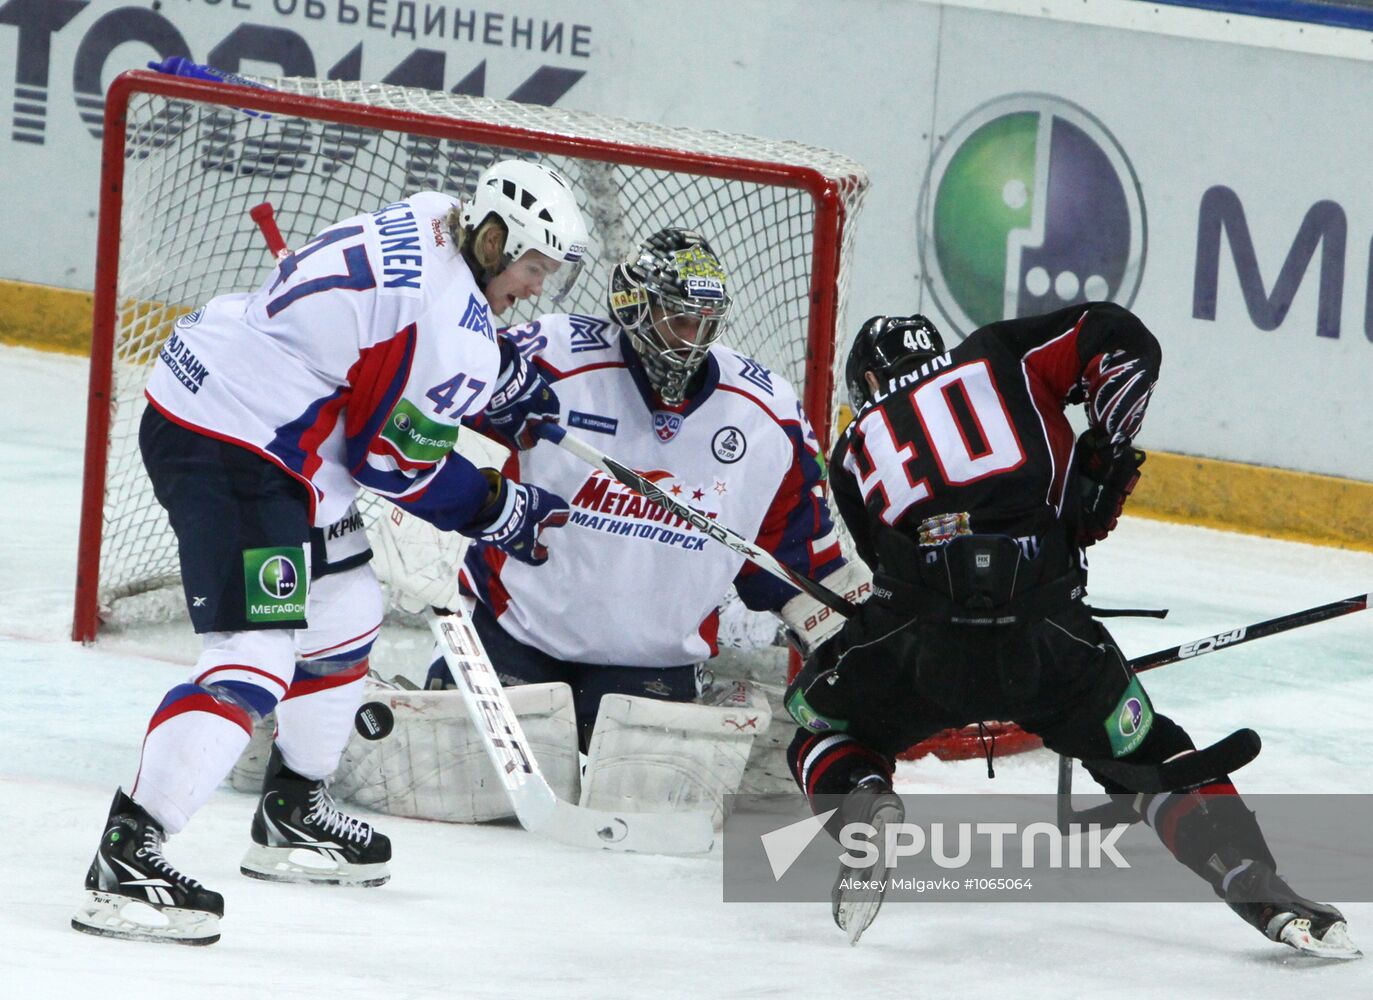 KHL. Avangard Omsk vs. Metallurg Magnitogorsk